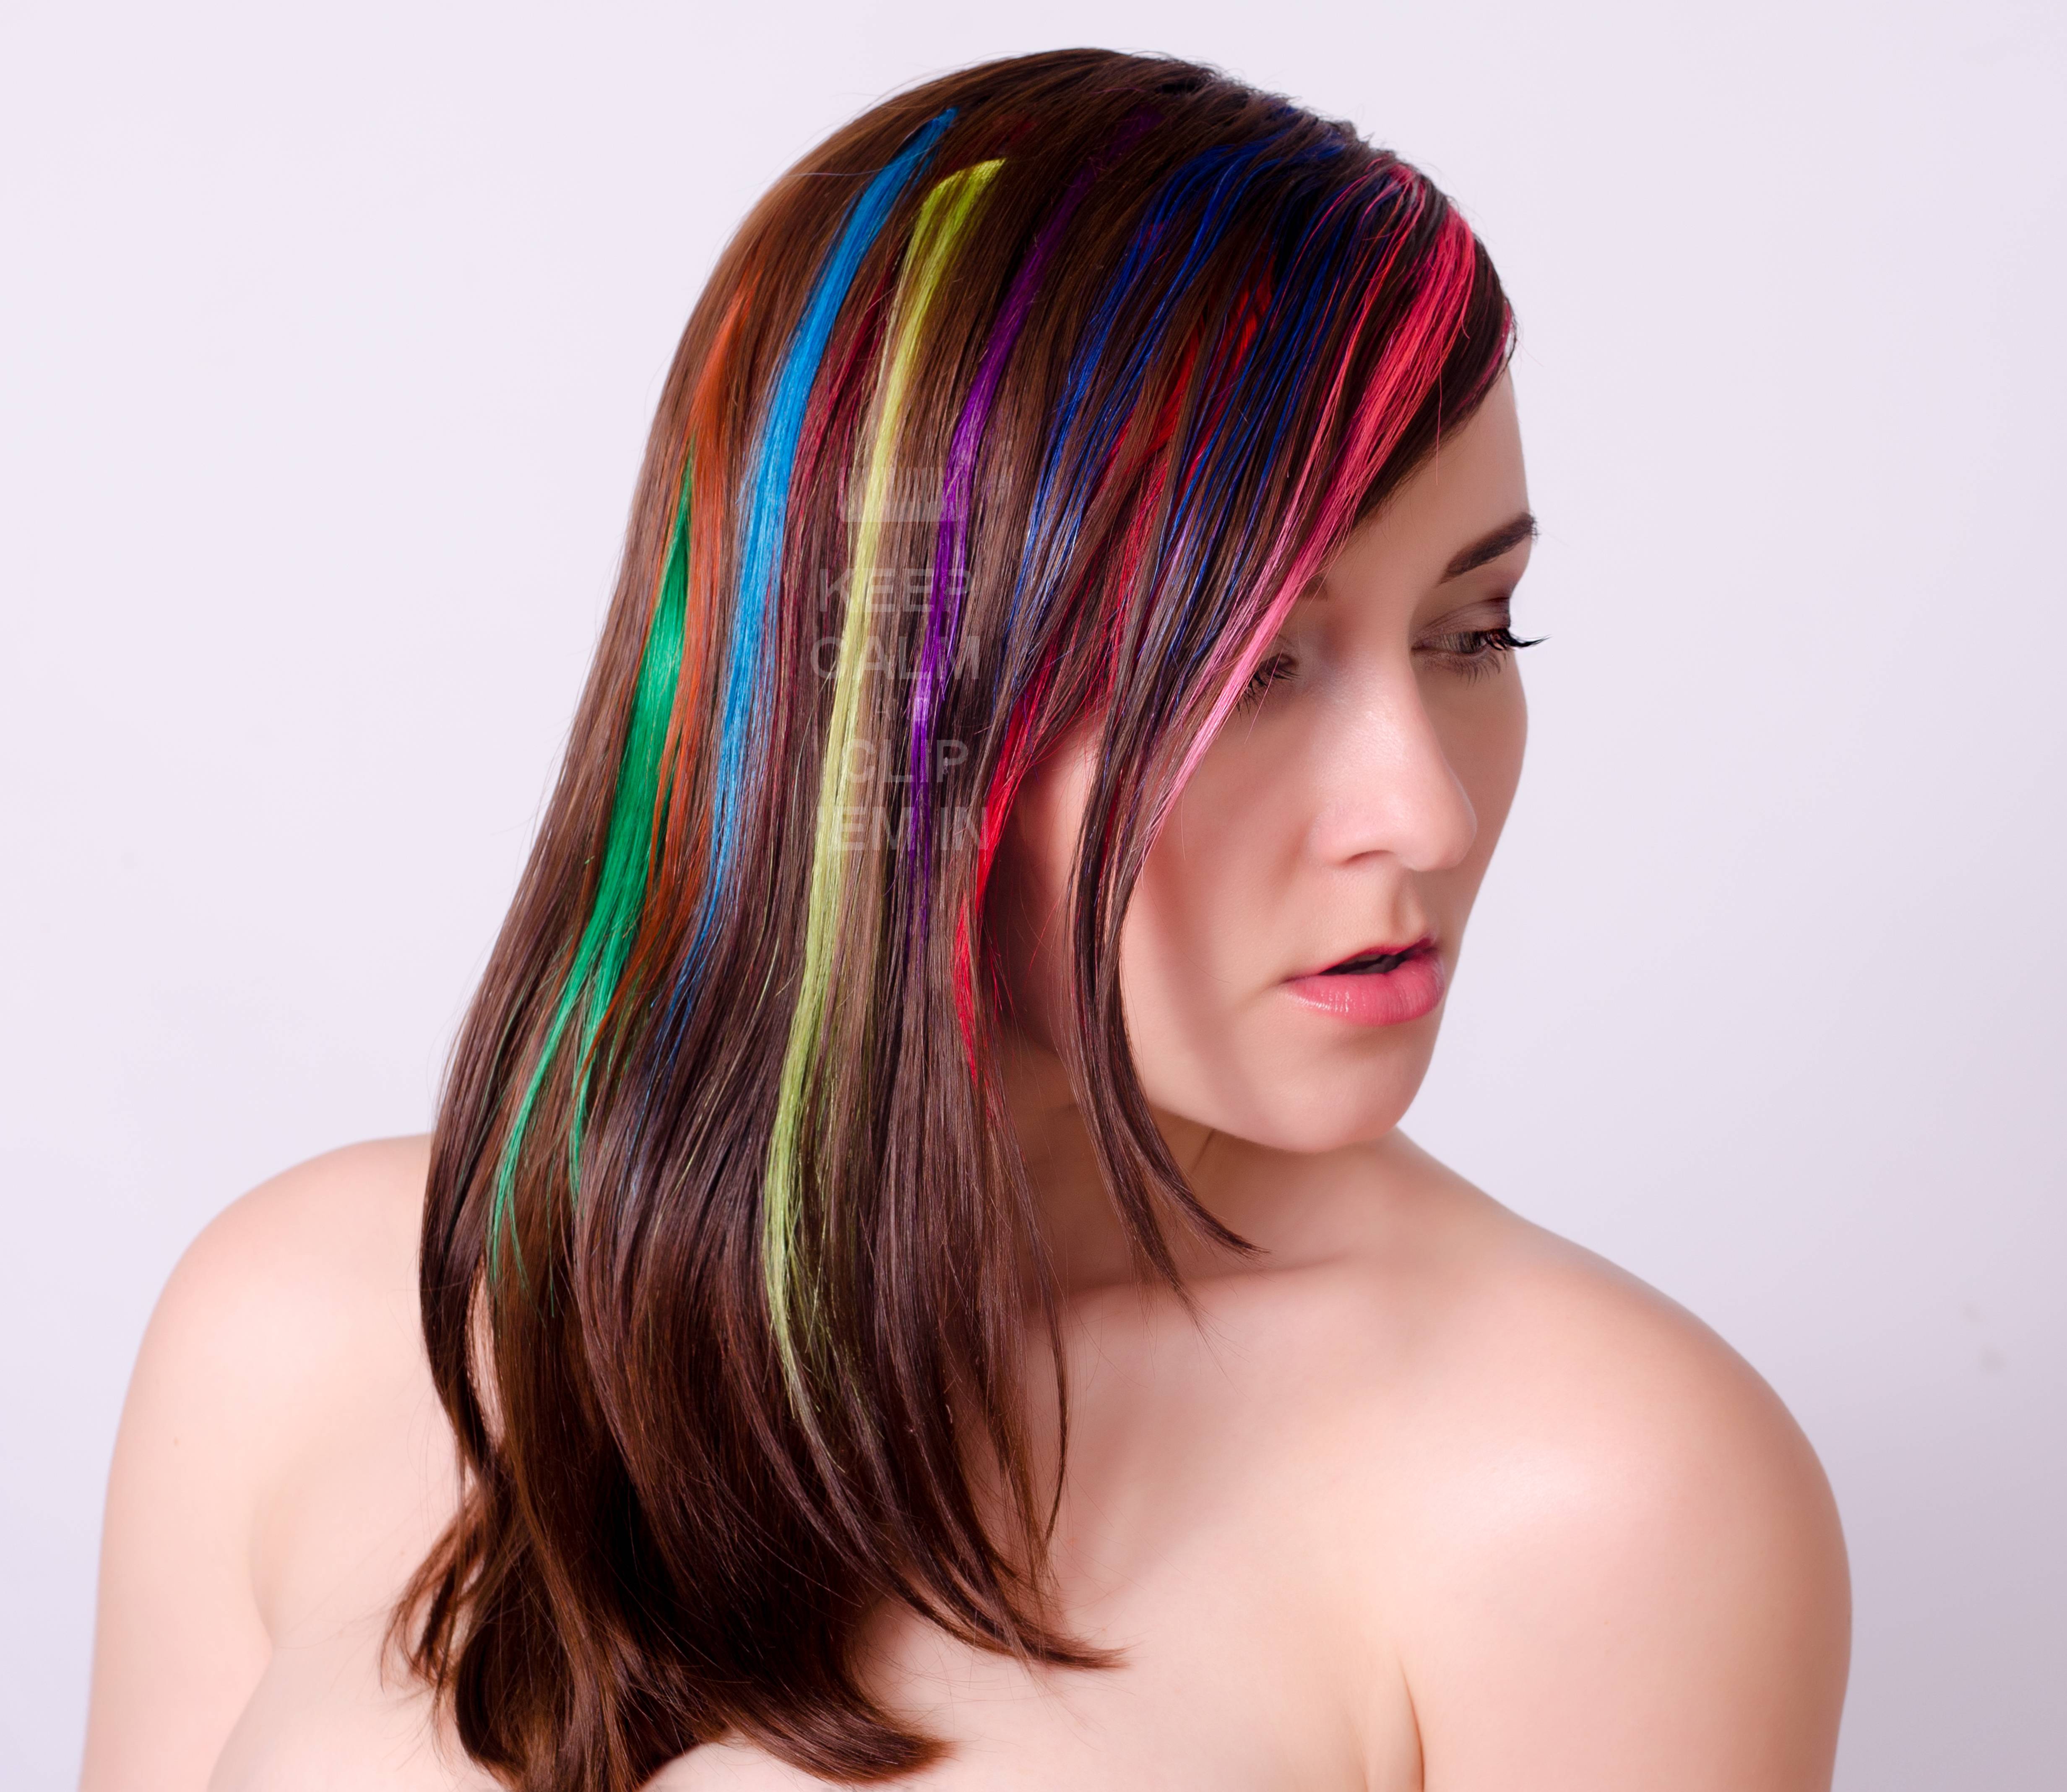 Пряди твоих волос. Разноцветные пряди. Разноцветное мелирование на русые волосы. Мелирование с цветными прядями. Цветные пряди на волосах.